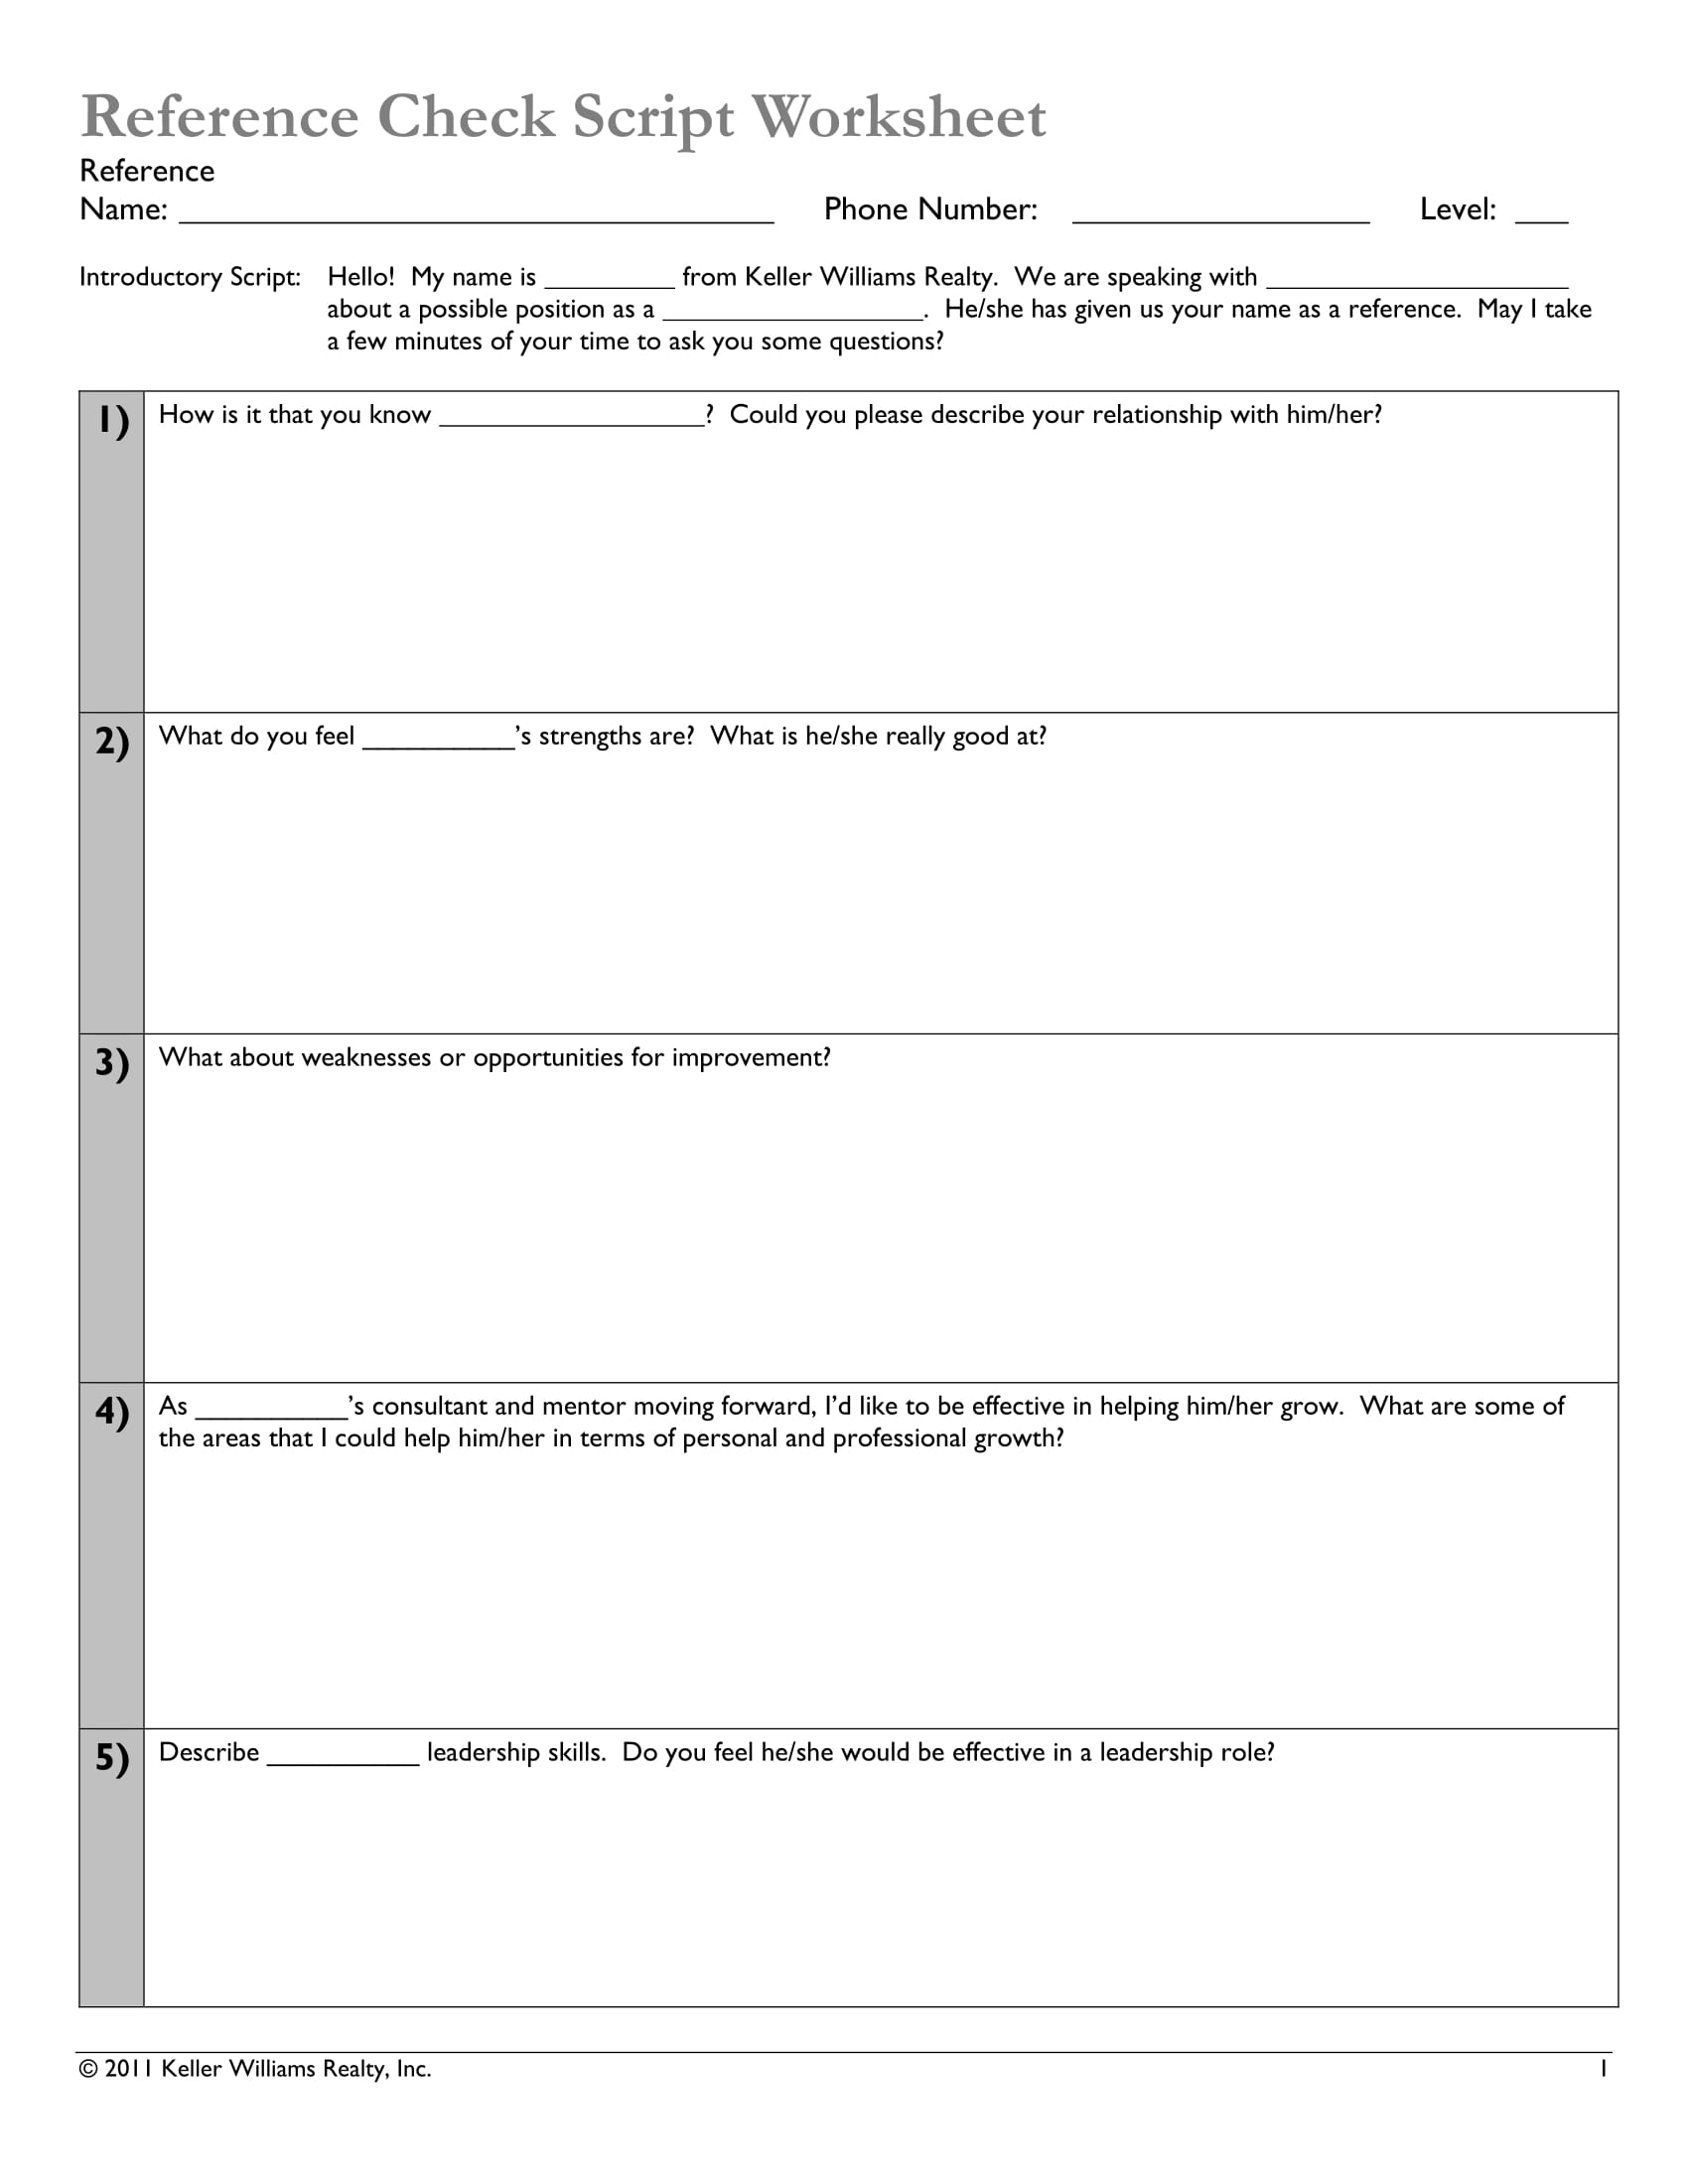 reference check script worksheet form 1